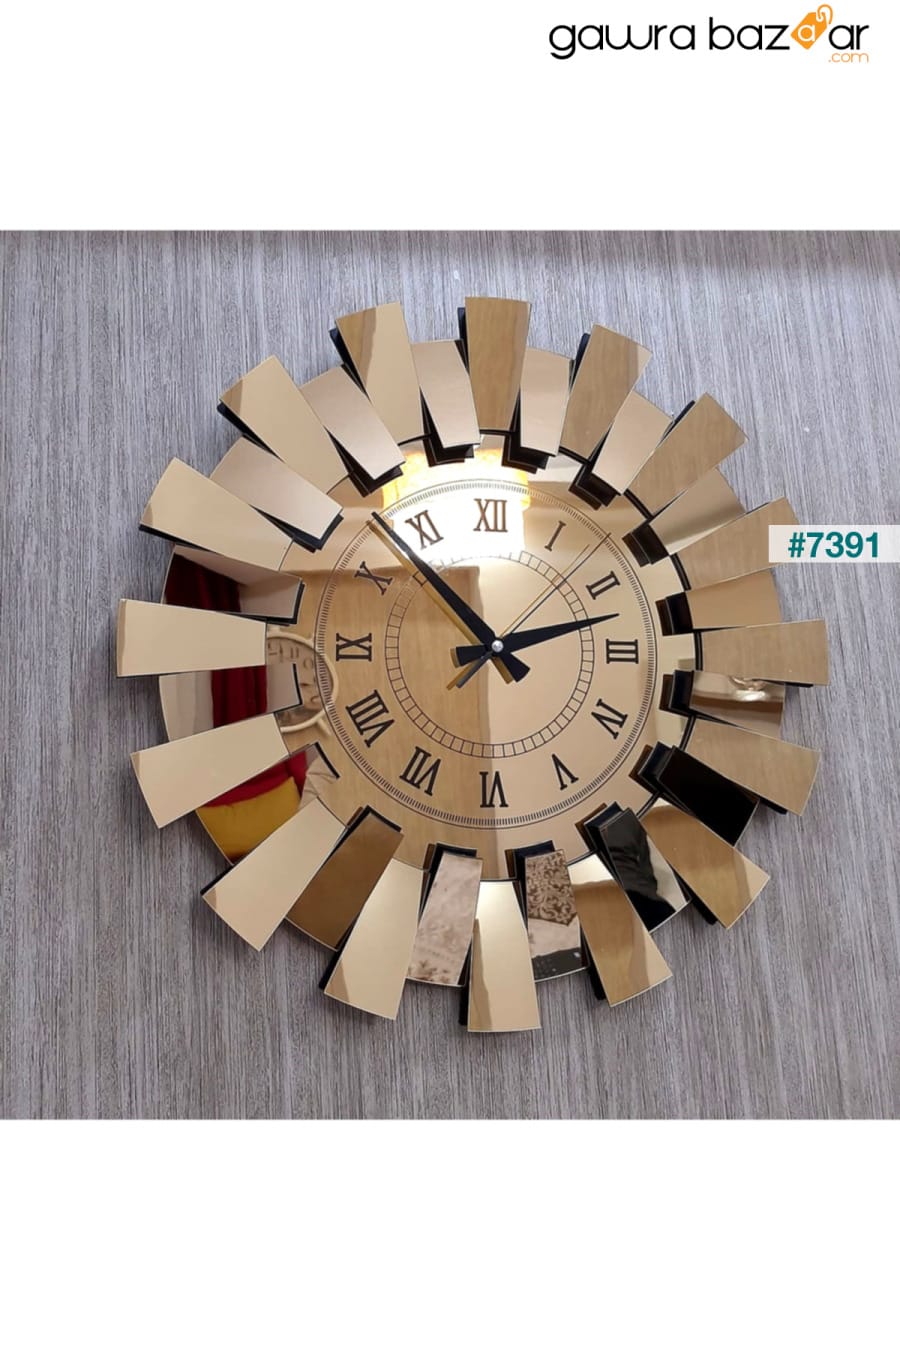 نموذج بيانو ثلاثي الأبعاد ساعة حائط معكوسة أرقام رومانية ذهبية TUĞBArt 6